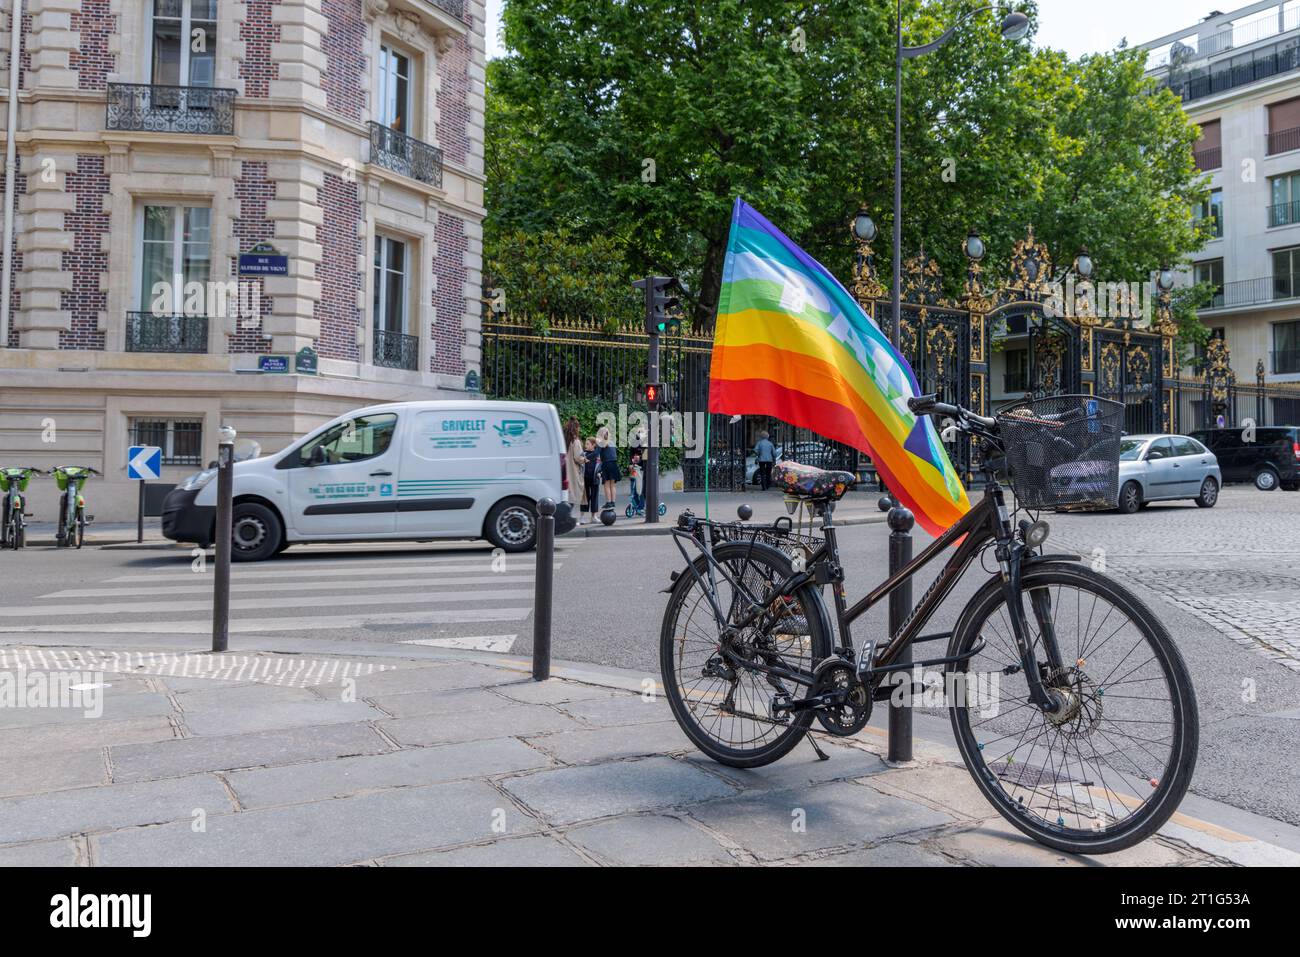 Vélo garé au premier plan, portant un drapeau arc-en-ciel avec le mot 'paix' ('paix'). En arrière-plan, les voitures passent devant l'entrée ornée d'un parc parisien. Banque D'Images